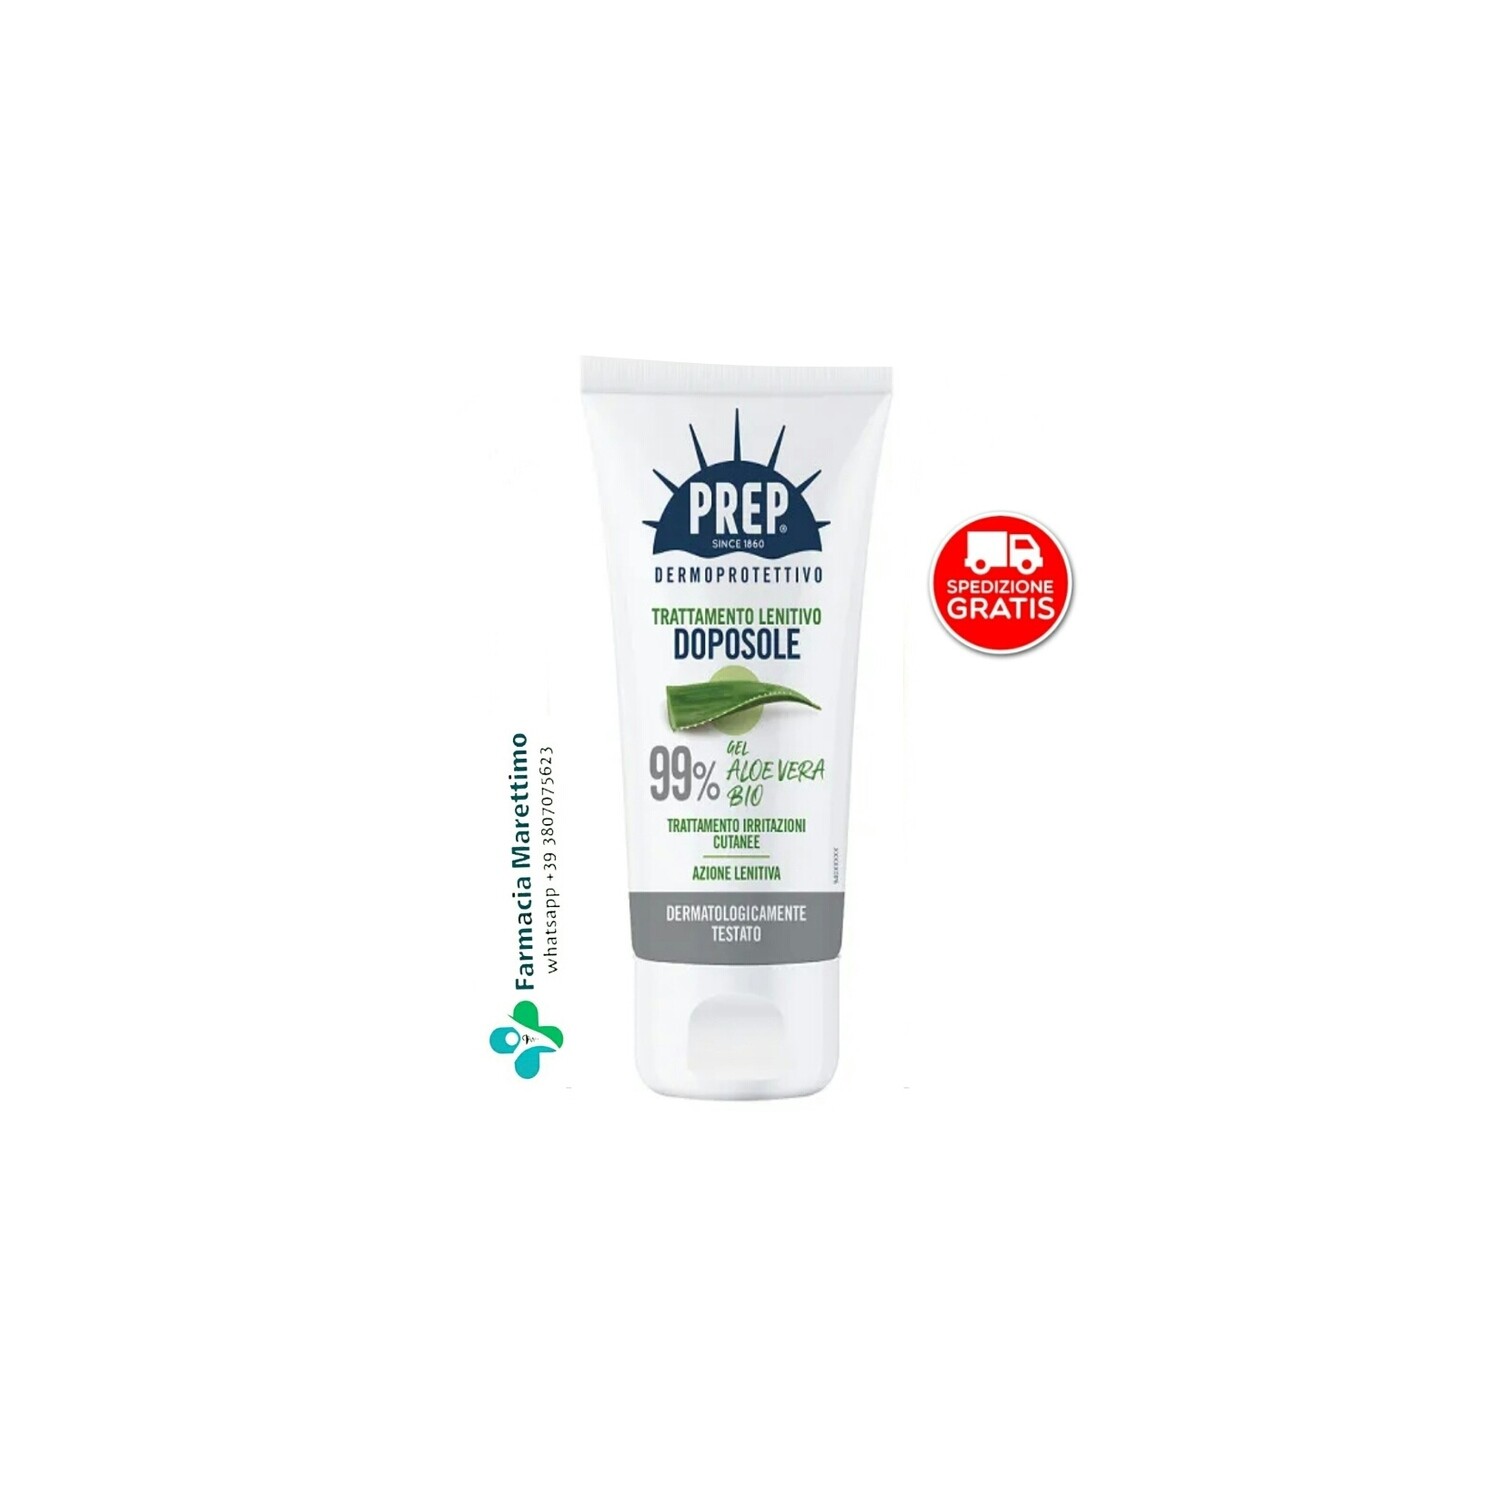 PREP® Dermoprotettivo Gel Doposole Aloe Vera 99%